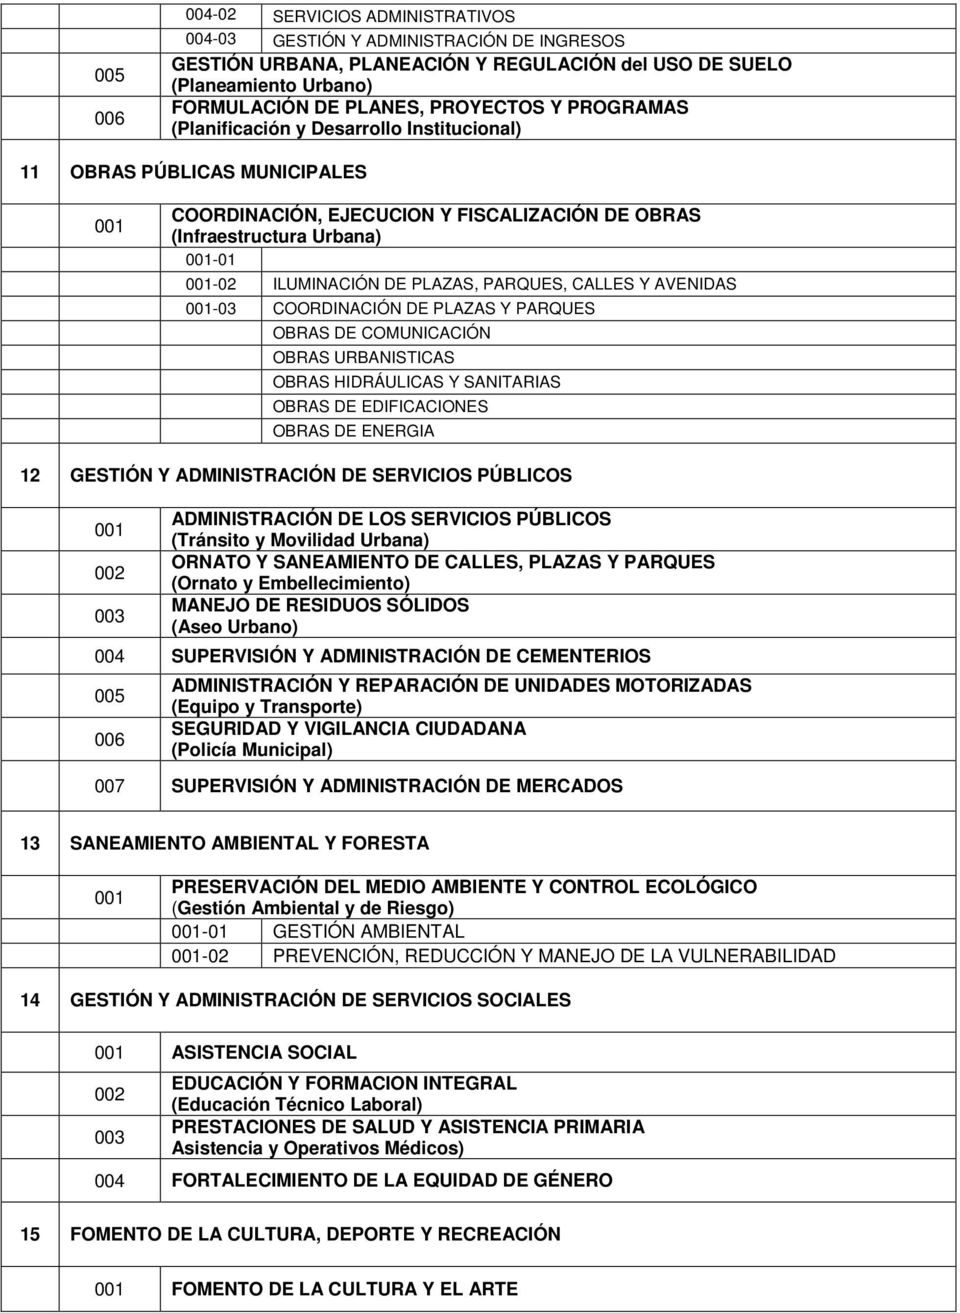 AVENIDAS 00-03 COORDINACIÓN DE PLAZAS Y PARQUES OBRAS DE COMUNICACIÓN OBRAS URBANISTICAS OBRAS HIDRÁULICAS Y SANITARIAS OBRAS DE EDIFICACIONES OBRAS DE ENERGIA GESTIÓN Y ADMINISTRACIÓN DE SERVICIOS